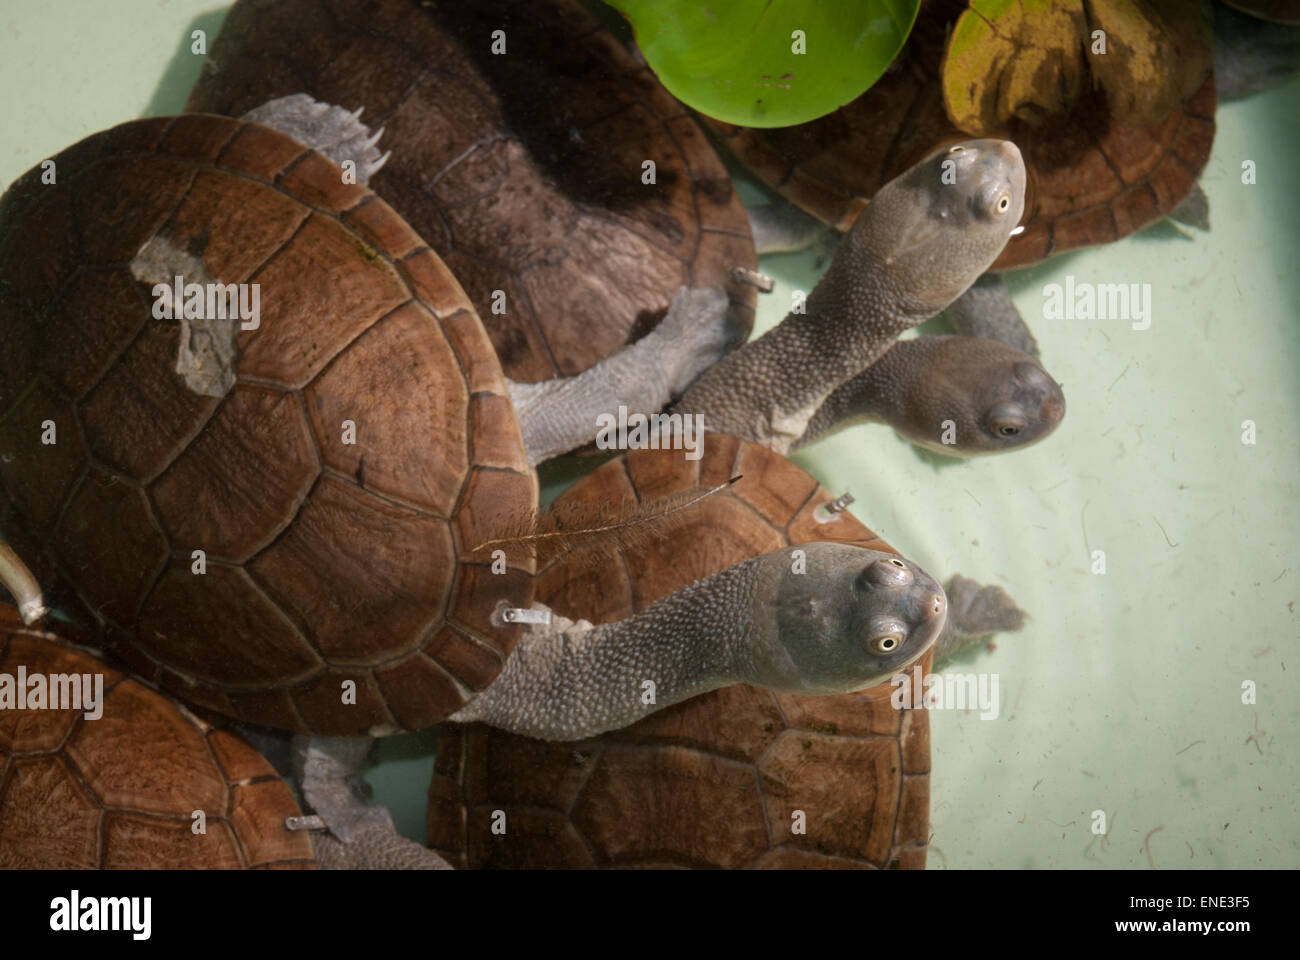 Las tortugas de cuello de serpiente, Chelodina mccordi), especie casi extinguida, especies de agua dulce endémica de la isla de Rote, criador con licencia sitio. Foto de stock